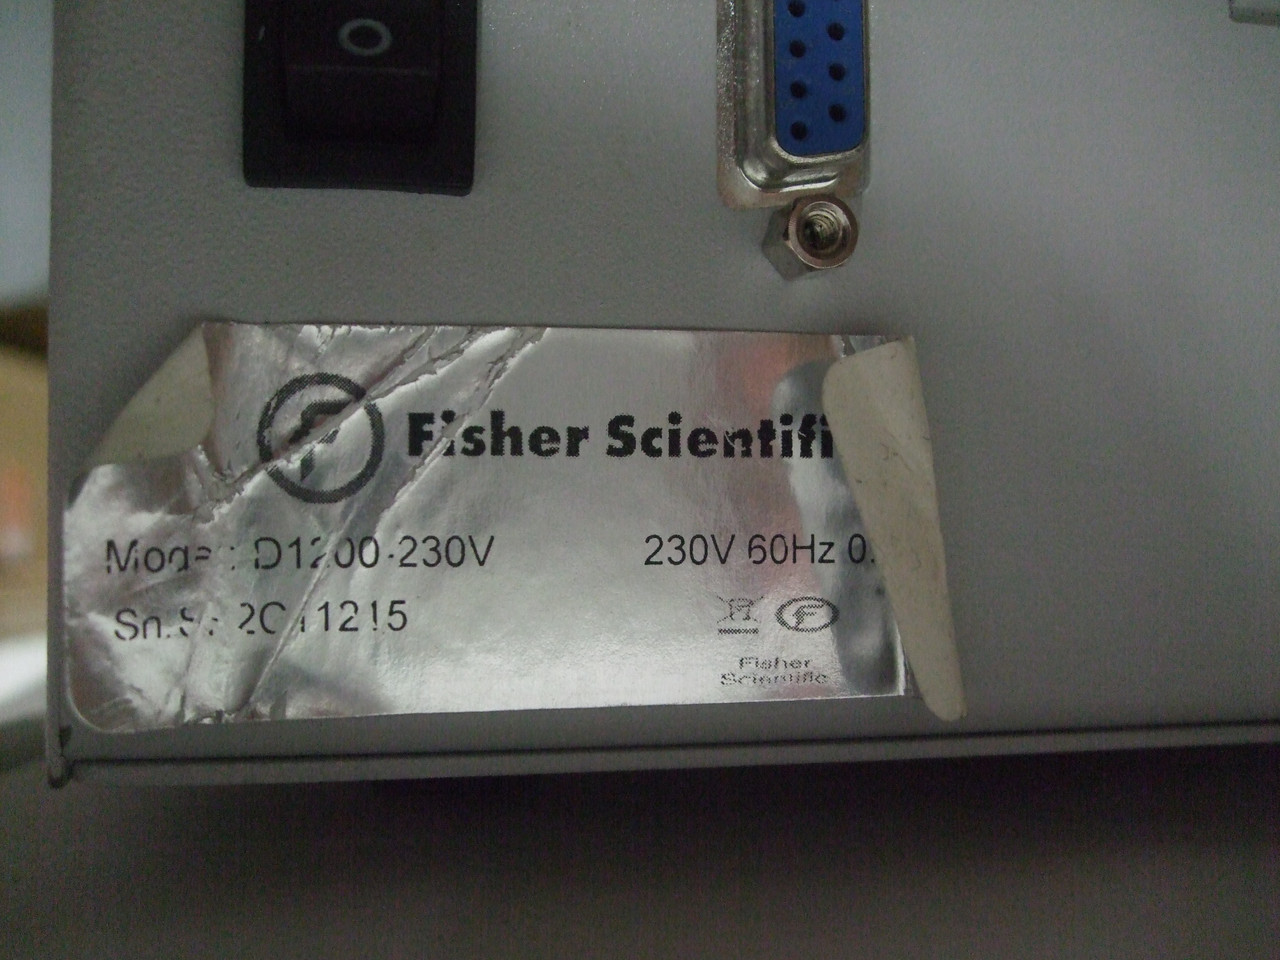 Fisher Scientific D-1200-230V Dry Bath - EURO Cord